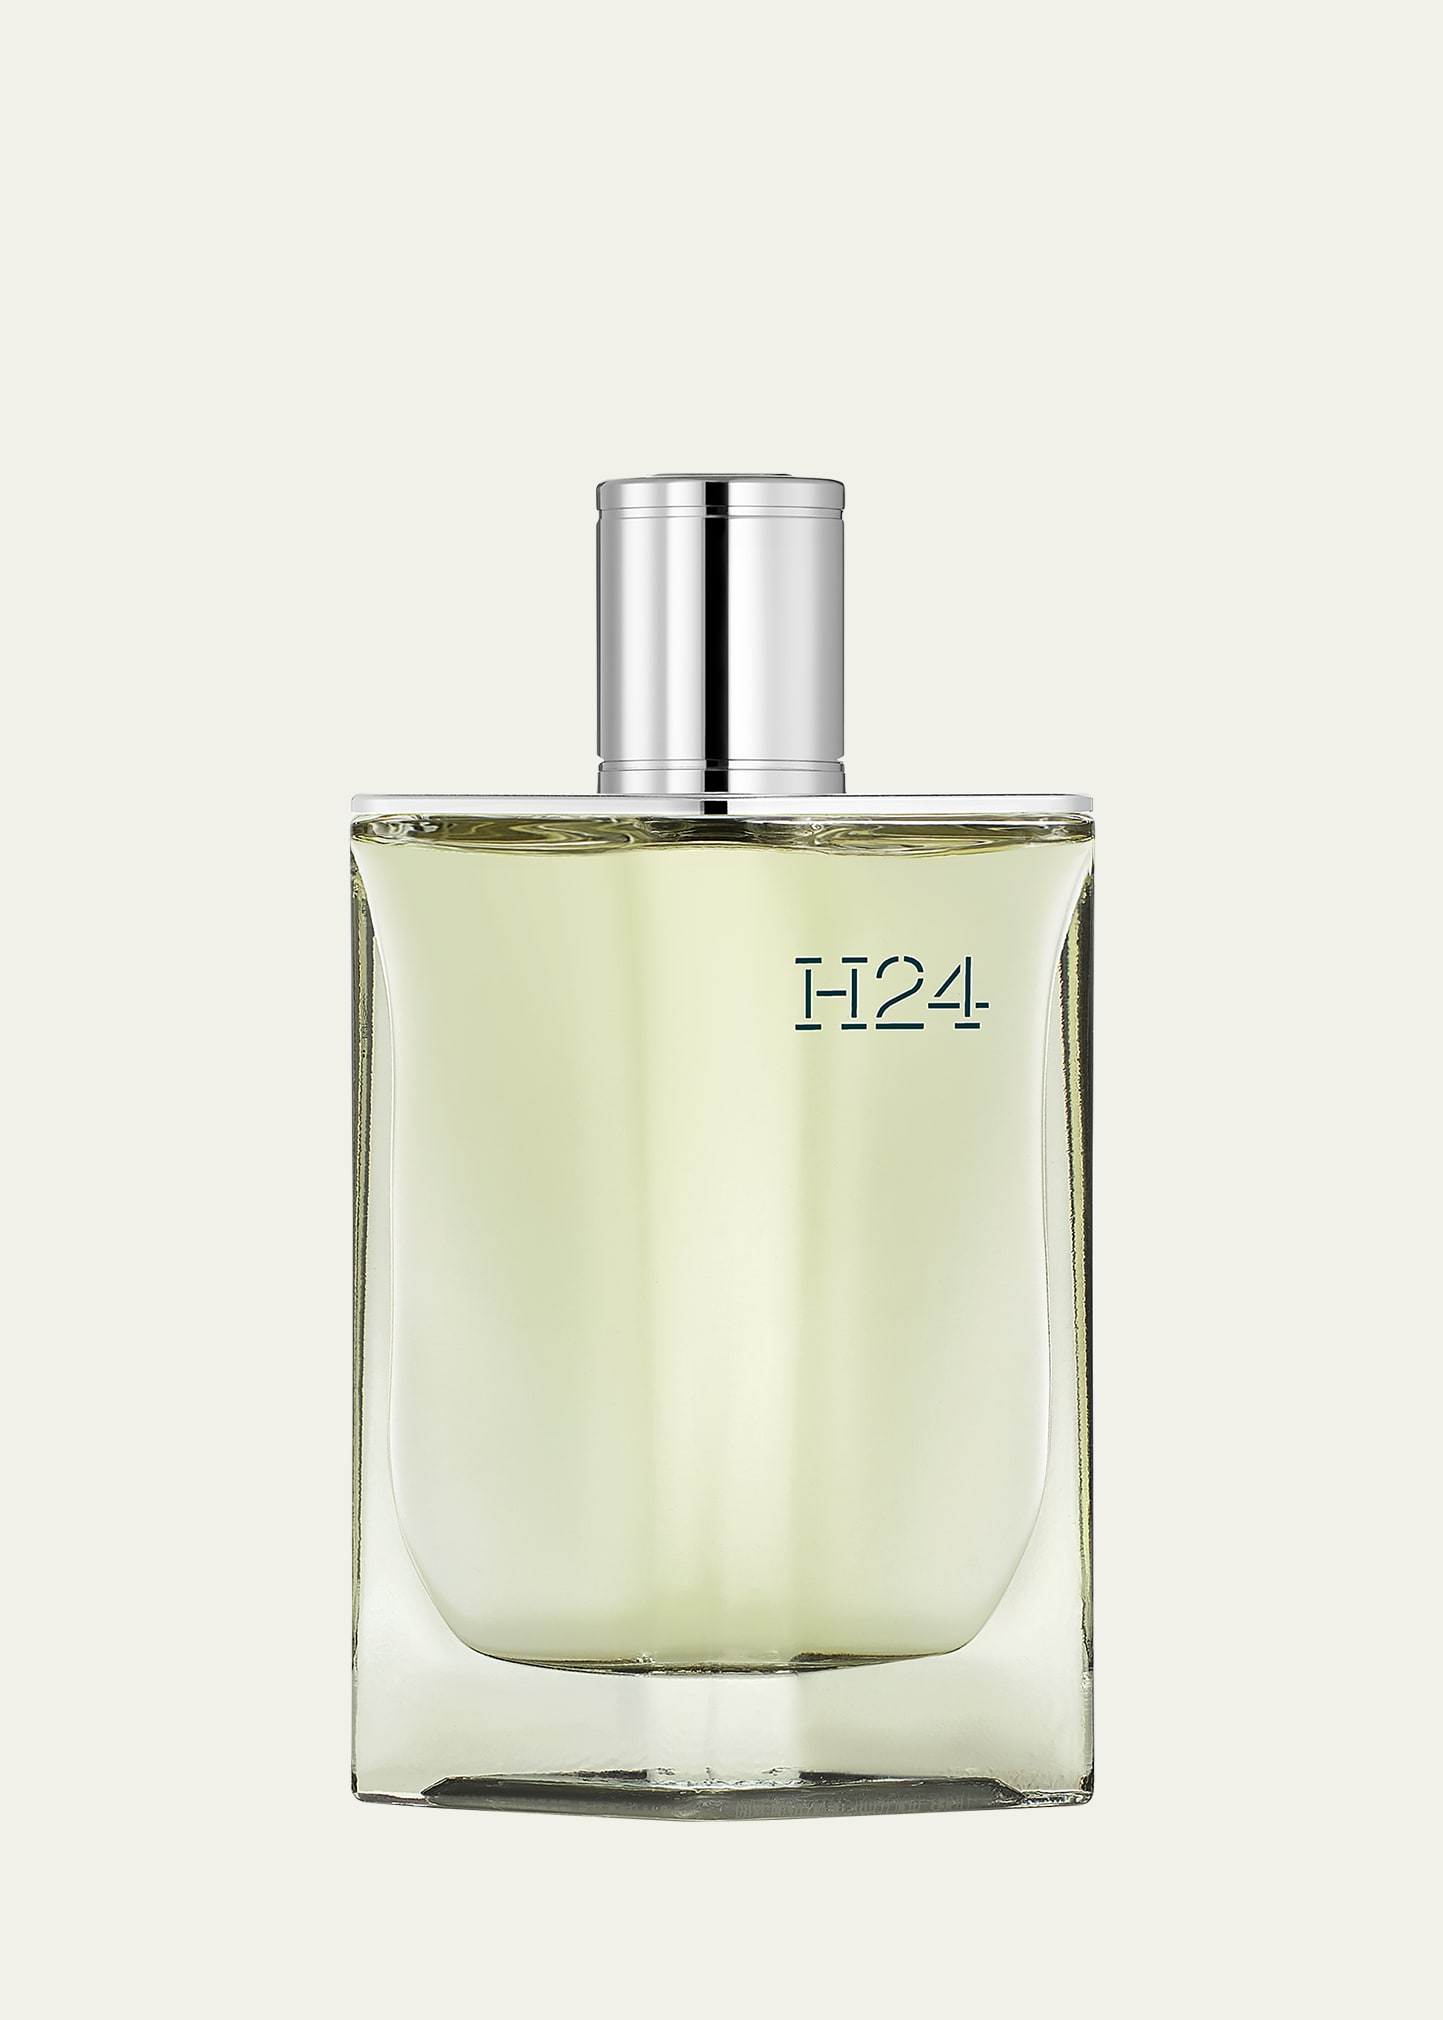 3.4 oz. H24 Eau de Parfum